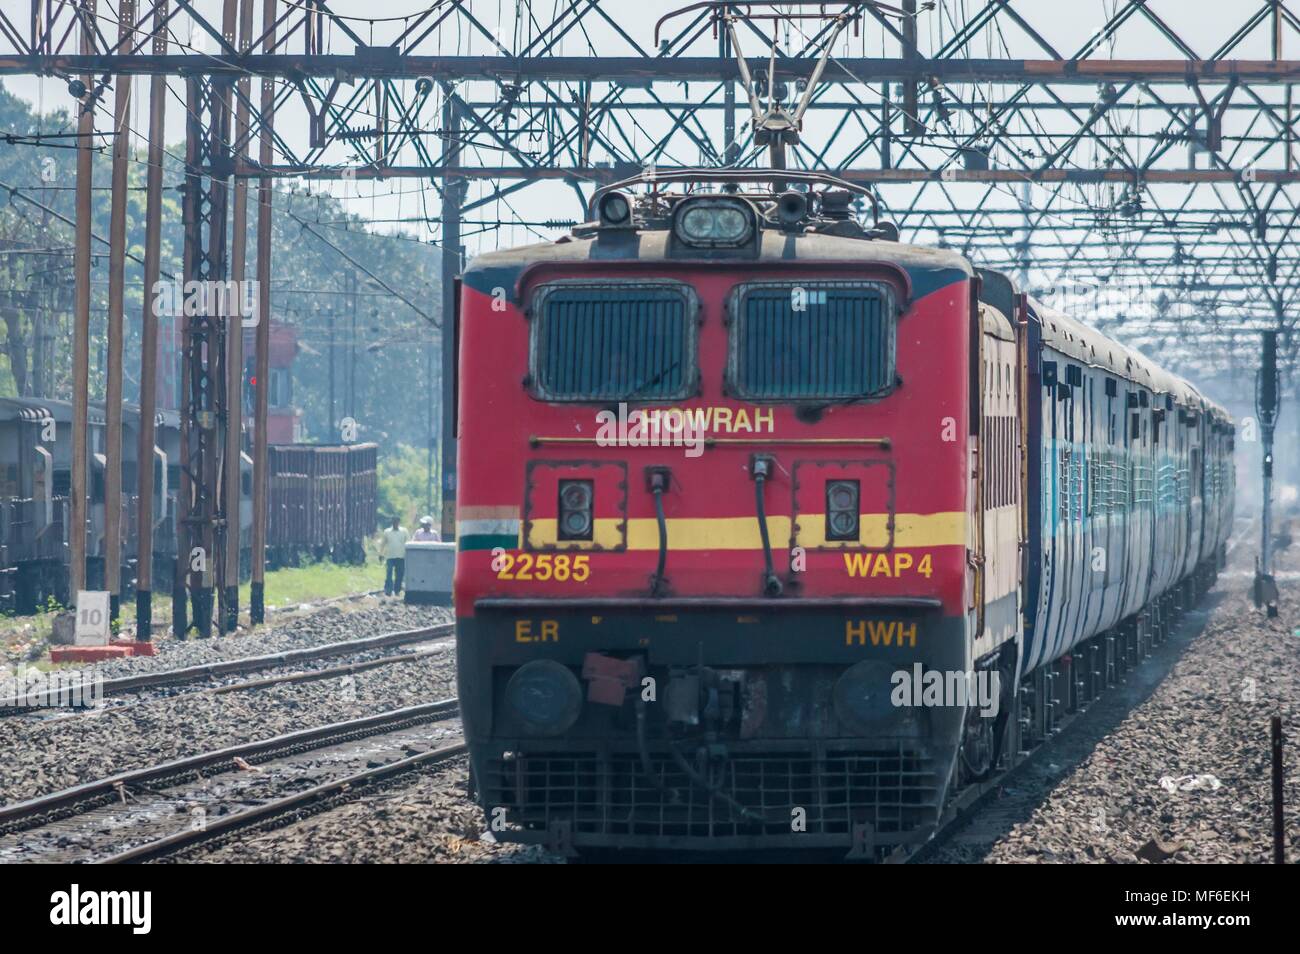 Kolkata, Inde - 4 mars 2018 : Express train tiré par une locomotive électrique voyageant vers la gare après une nuit de voyage, Kolk Banque D'Images